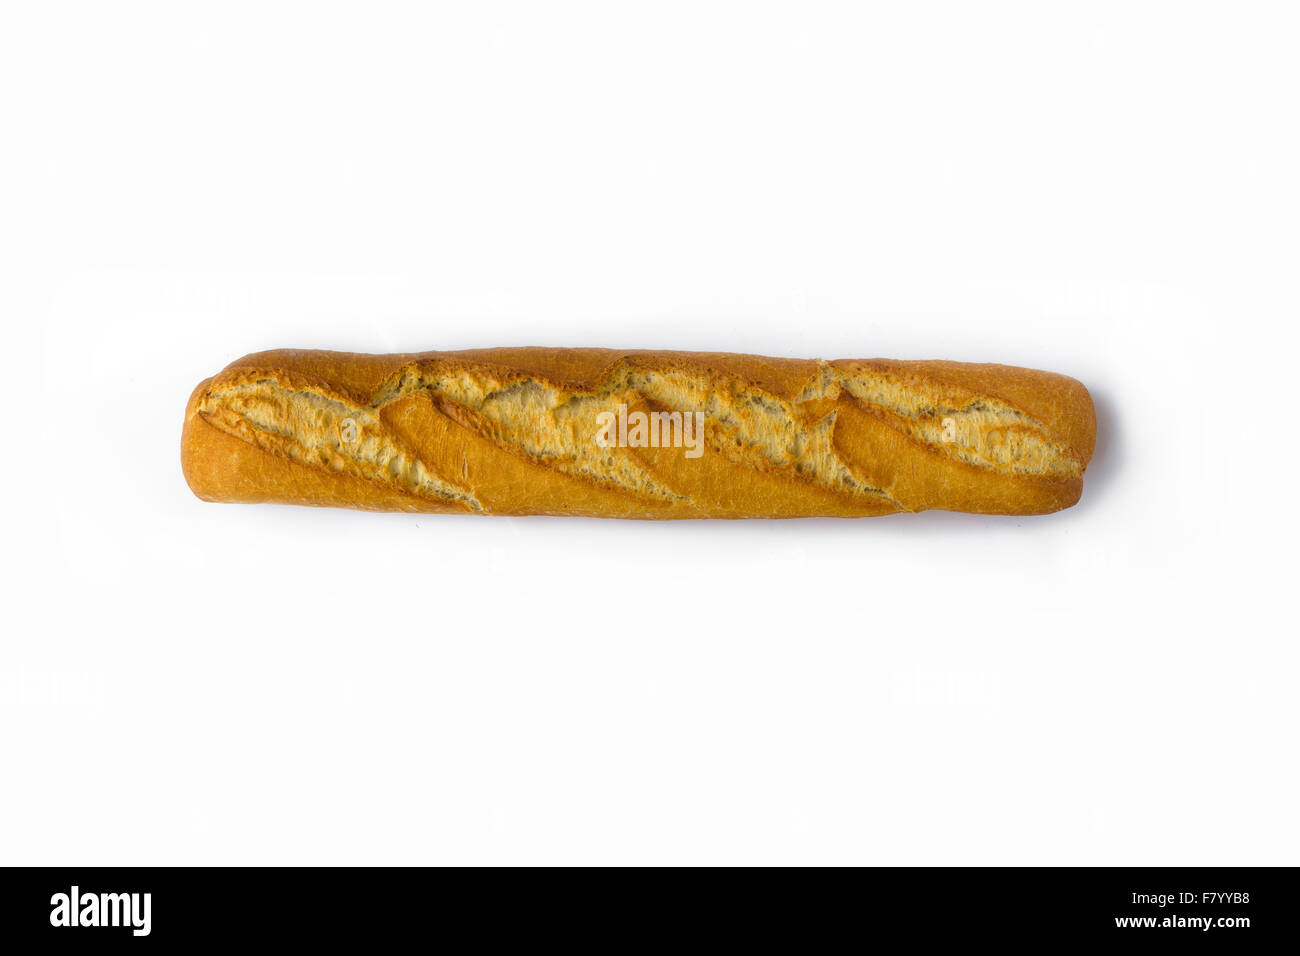 einzelne Baguette isoliert auf weißem Hintergrund - Brot Stockfoto